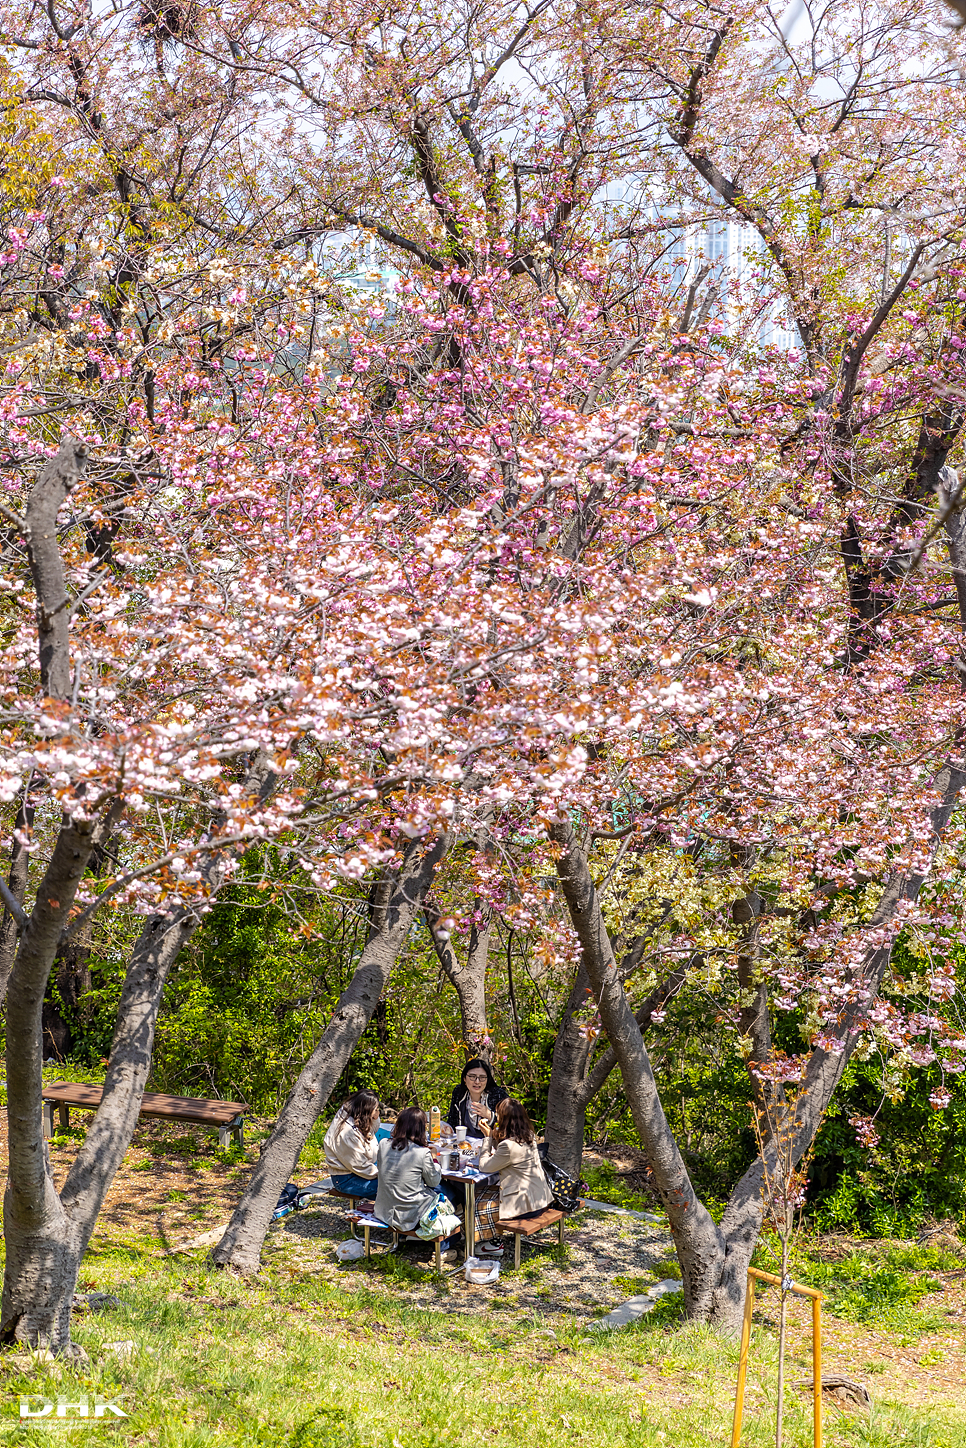 부산 벚꽃 명소 겹벚꽃 데이트 민주공원 중앙공원 꽃동산 4월 국내 봄 여행 가볼만한곳